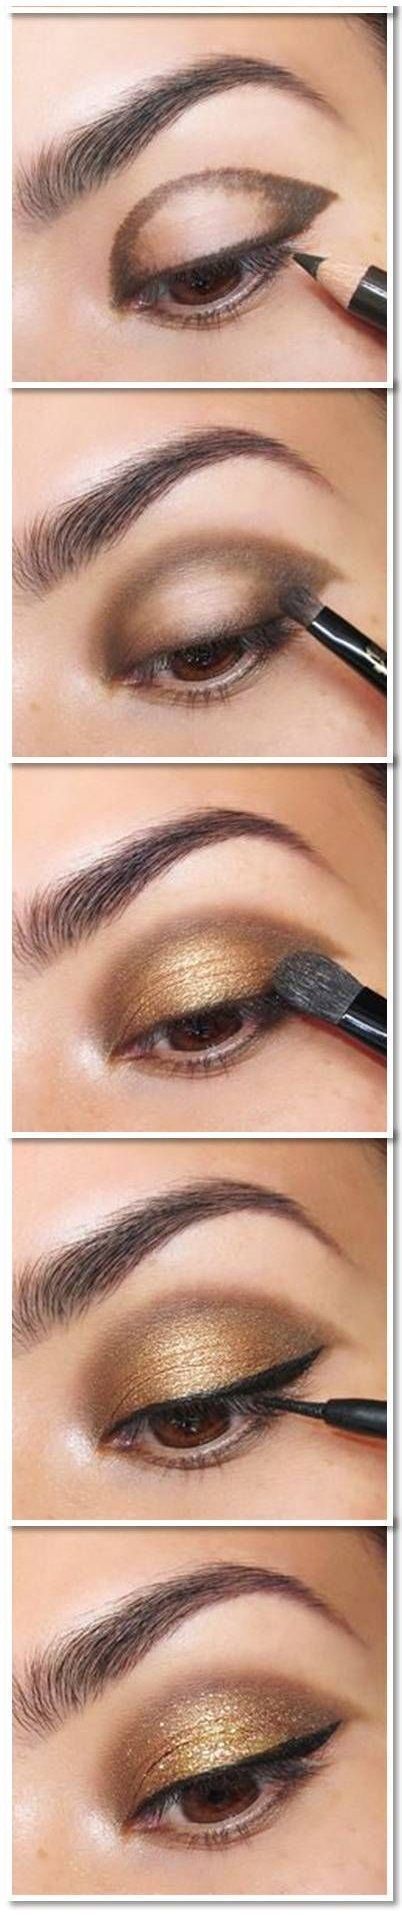 makeup-tutorial-gold-smokey-eyes-33 Make-up tutorial gold smokey eyes